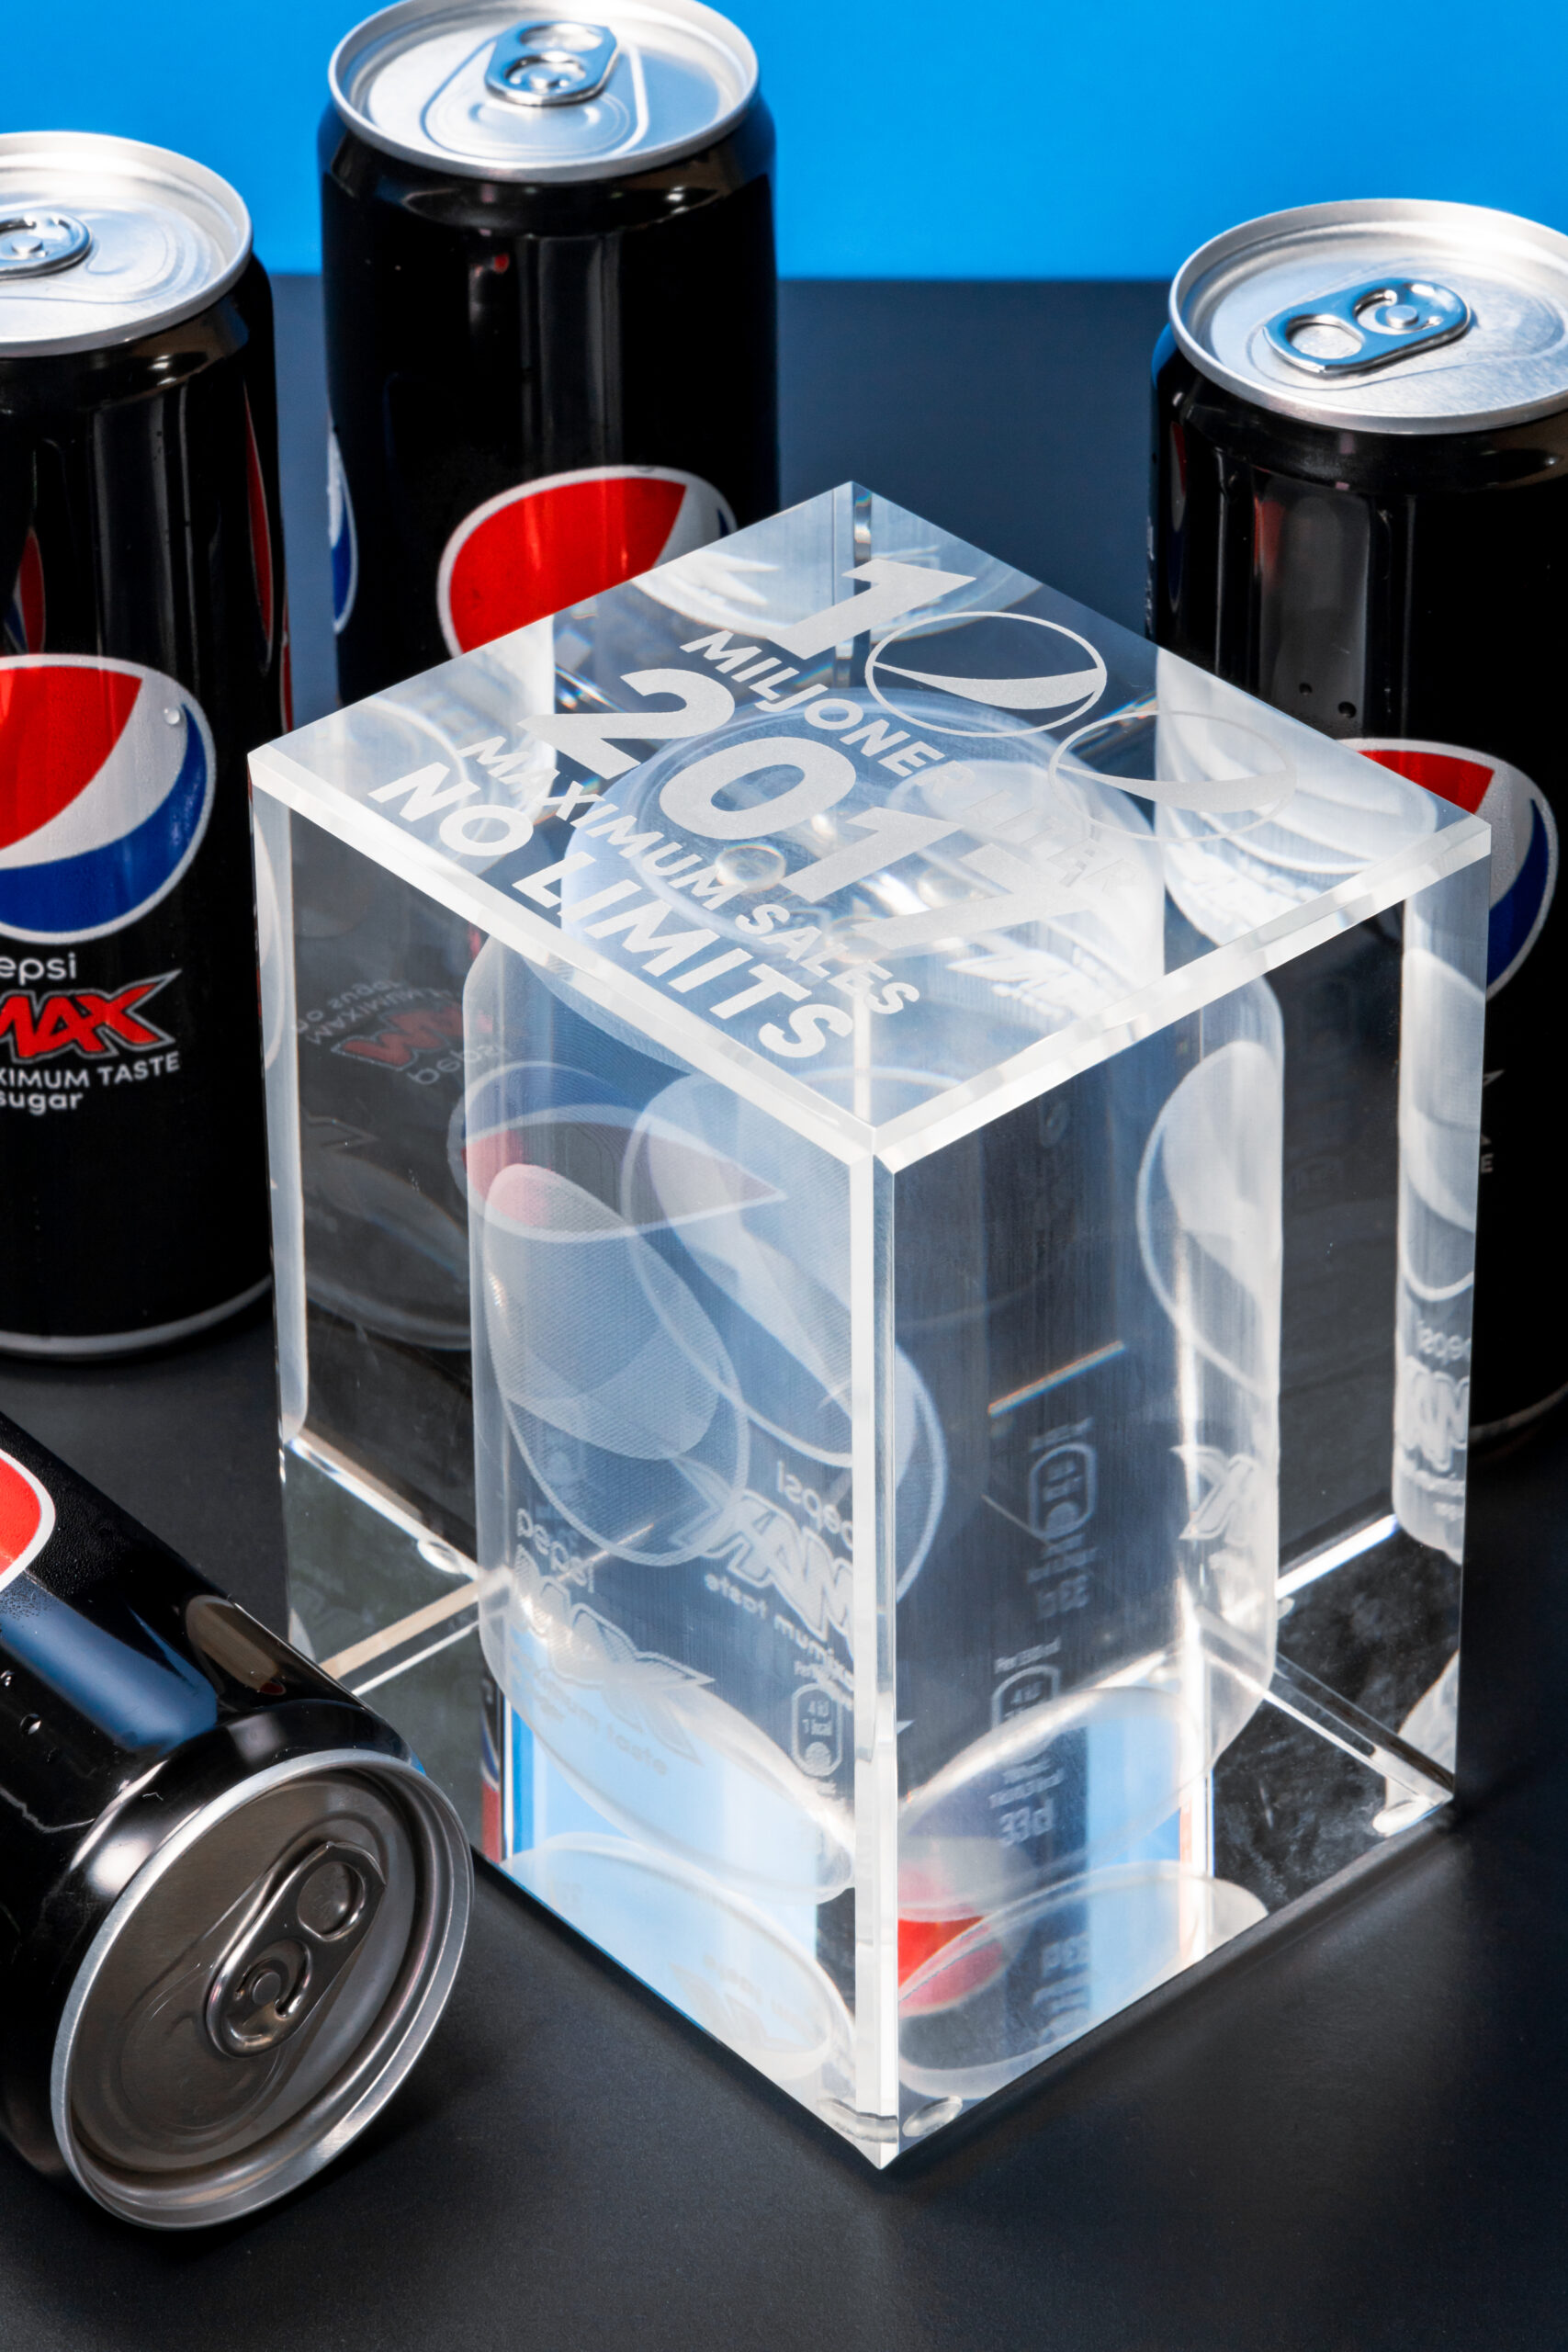 100 millioner liter Pepsi Max